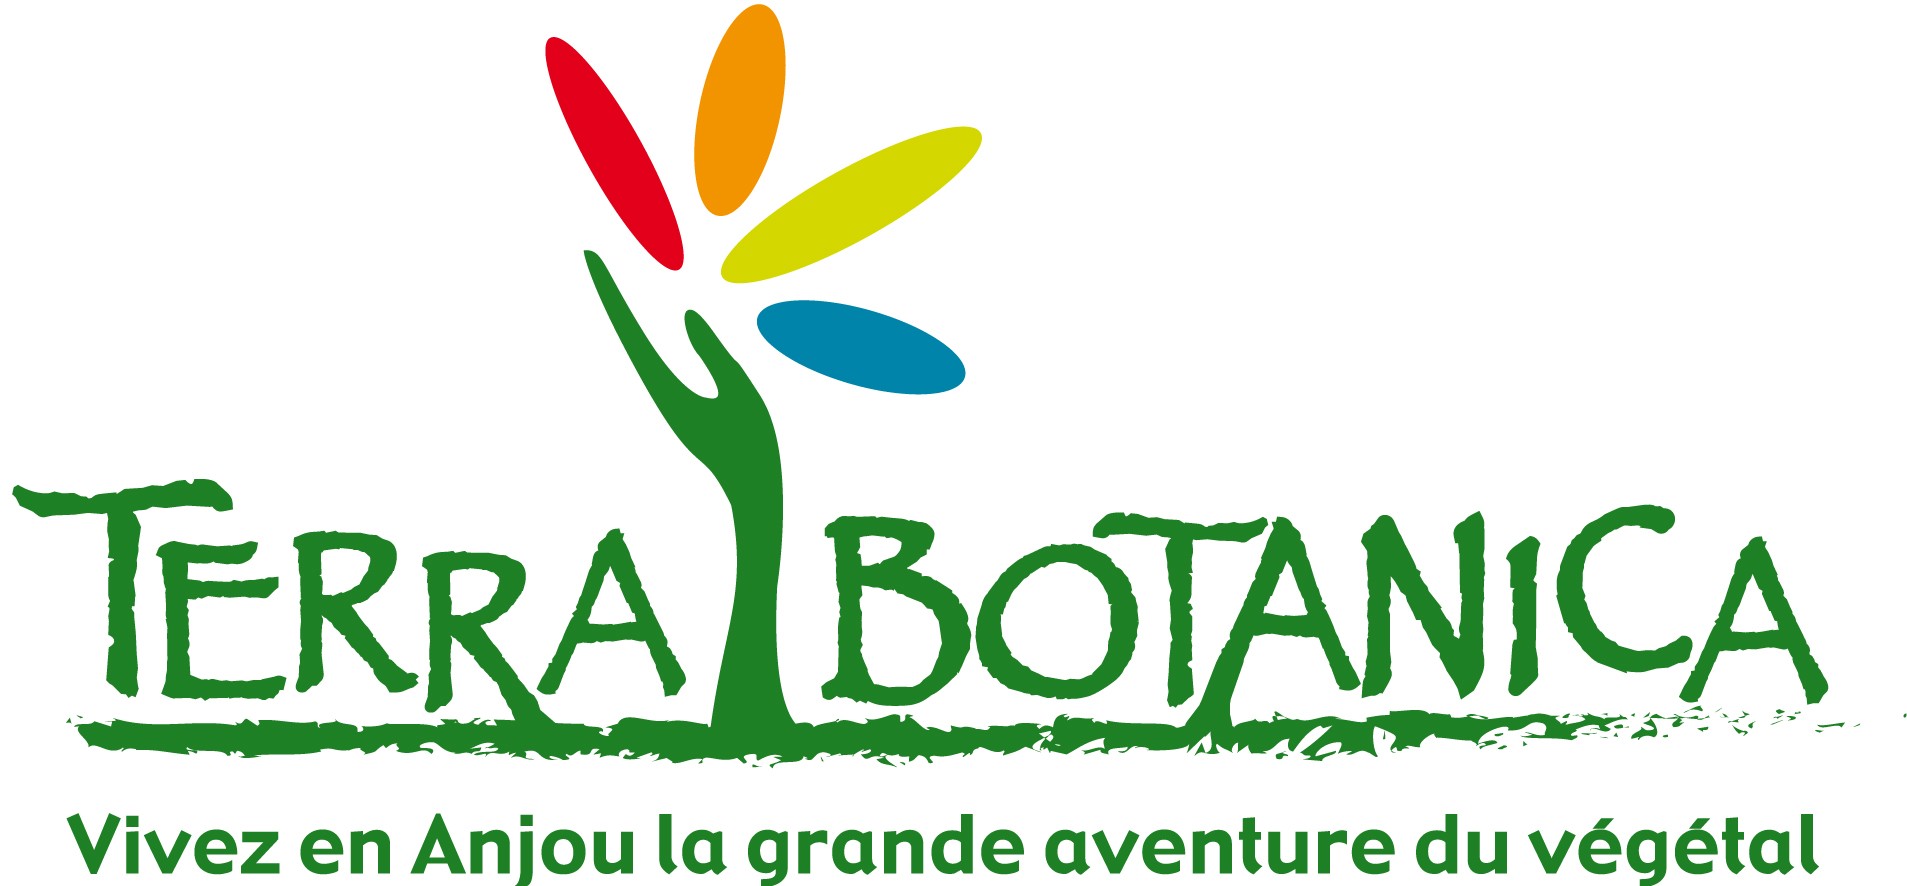 Terra Botanica logo